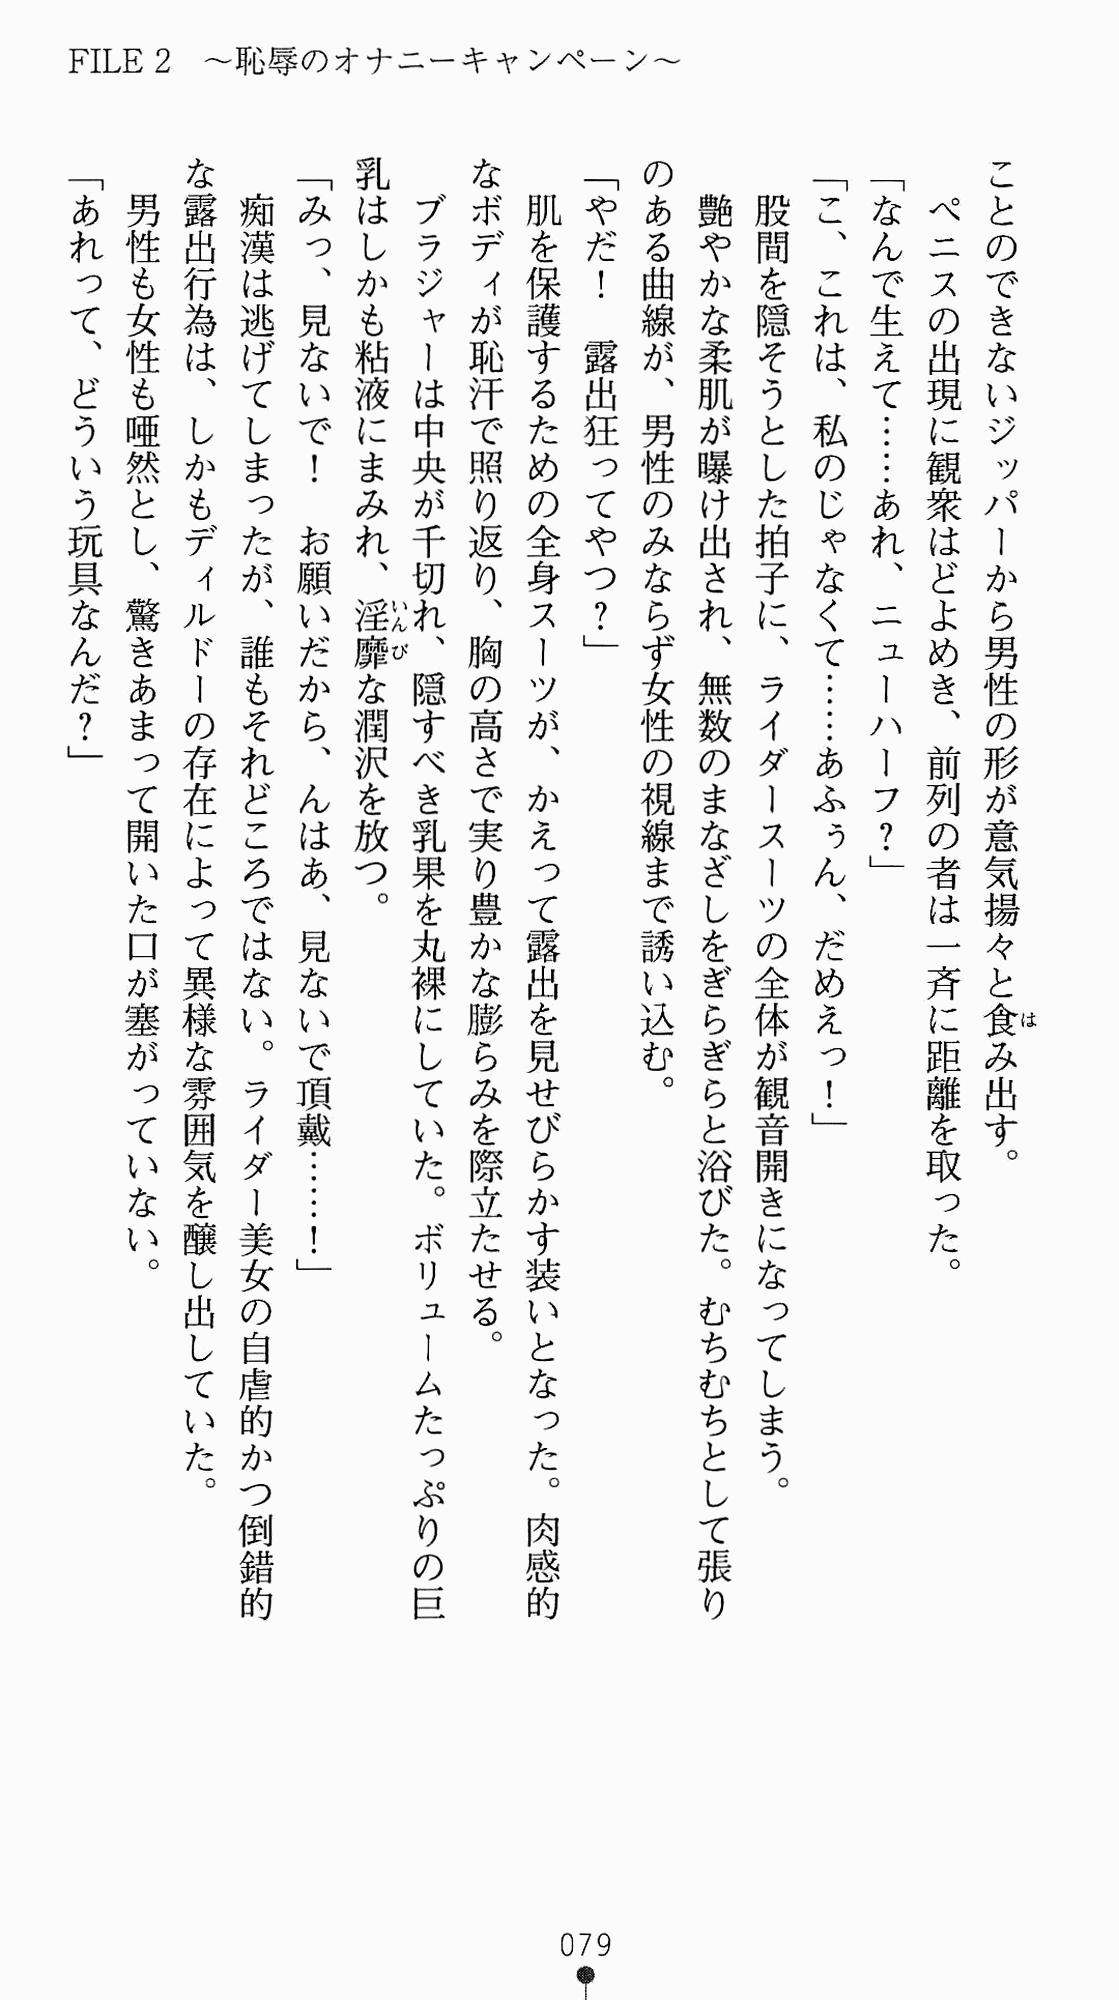 [Kagura Youko, Takahama Tarou] Shiritsu Tantei Takasuga Erika no Jikenbo 2 - Chijouha AV Satsuei 24-ji 94